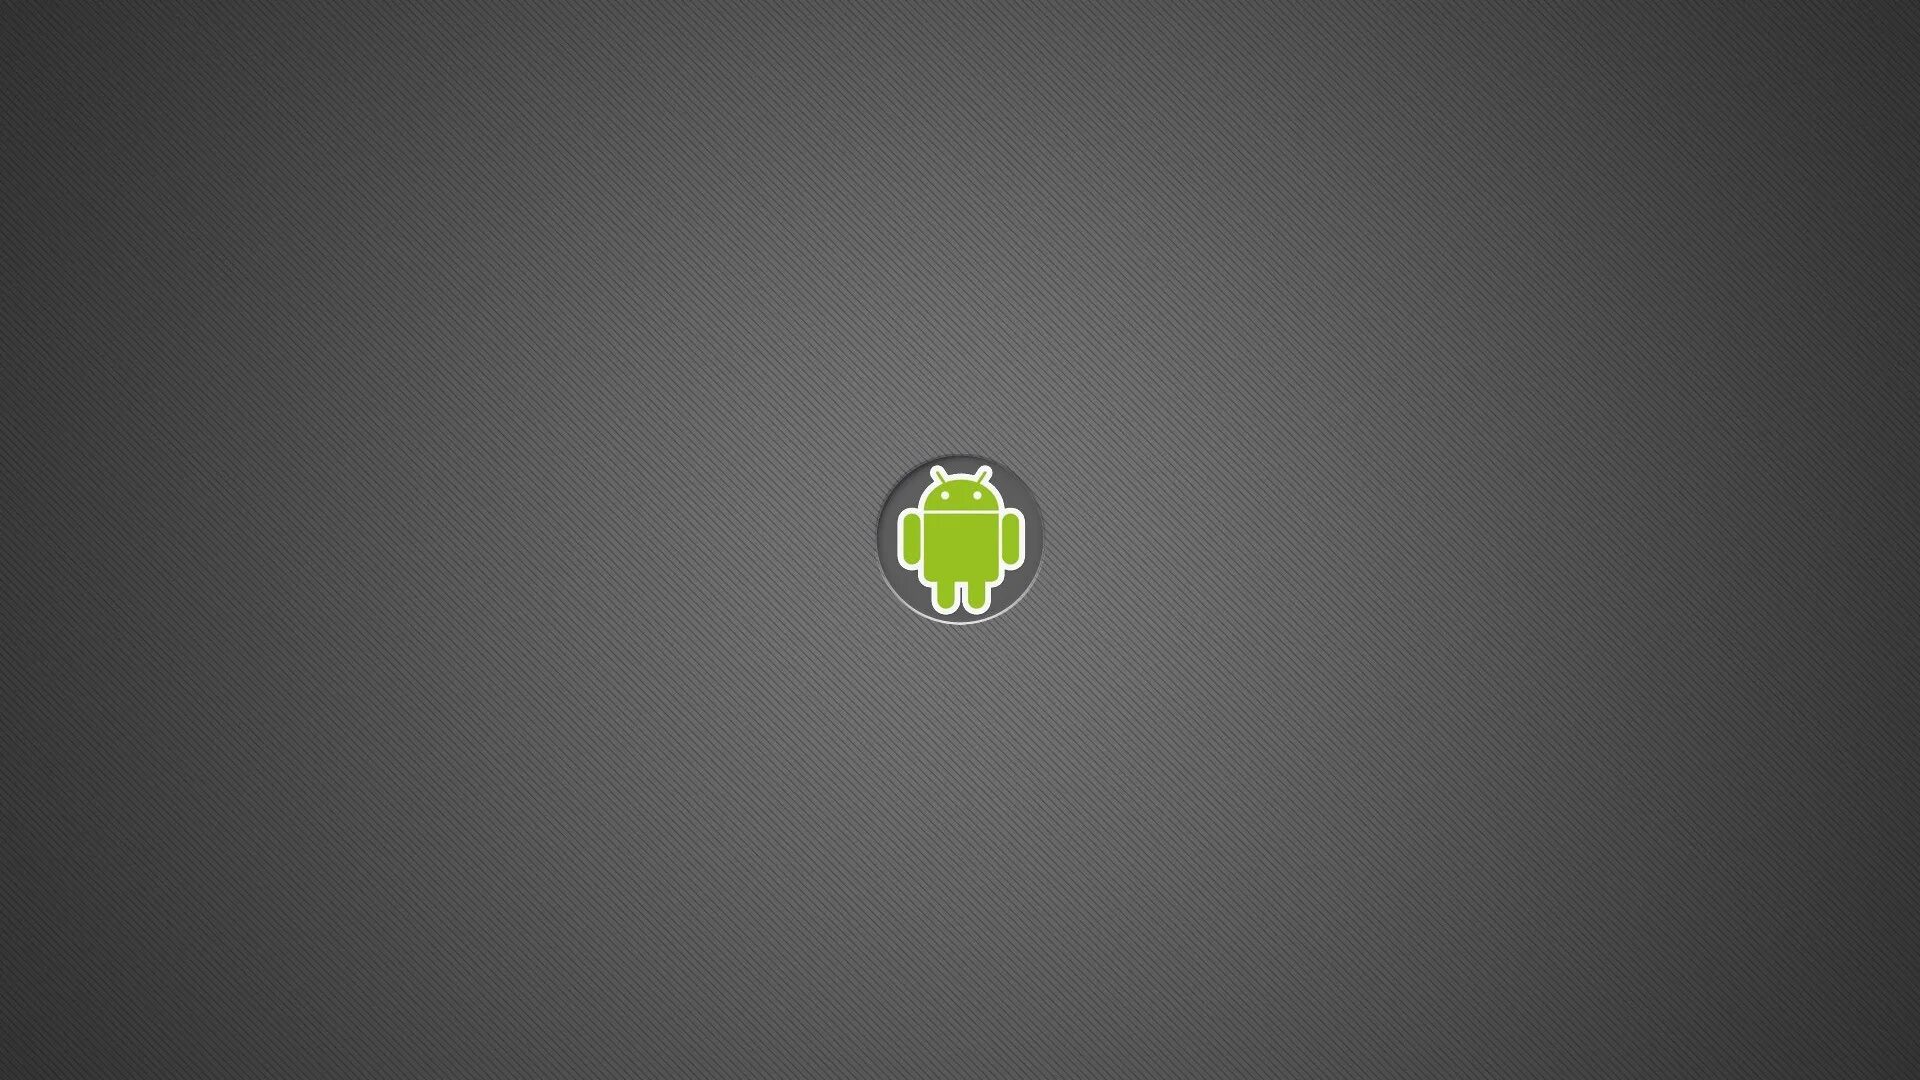 Обои Android. Обои на рабочий стол андроид. Серый фон на андроид. Стандартные обои Android.